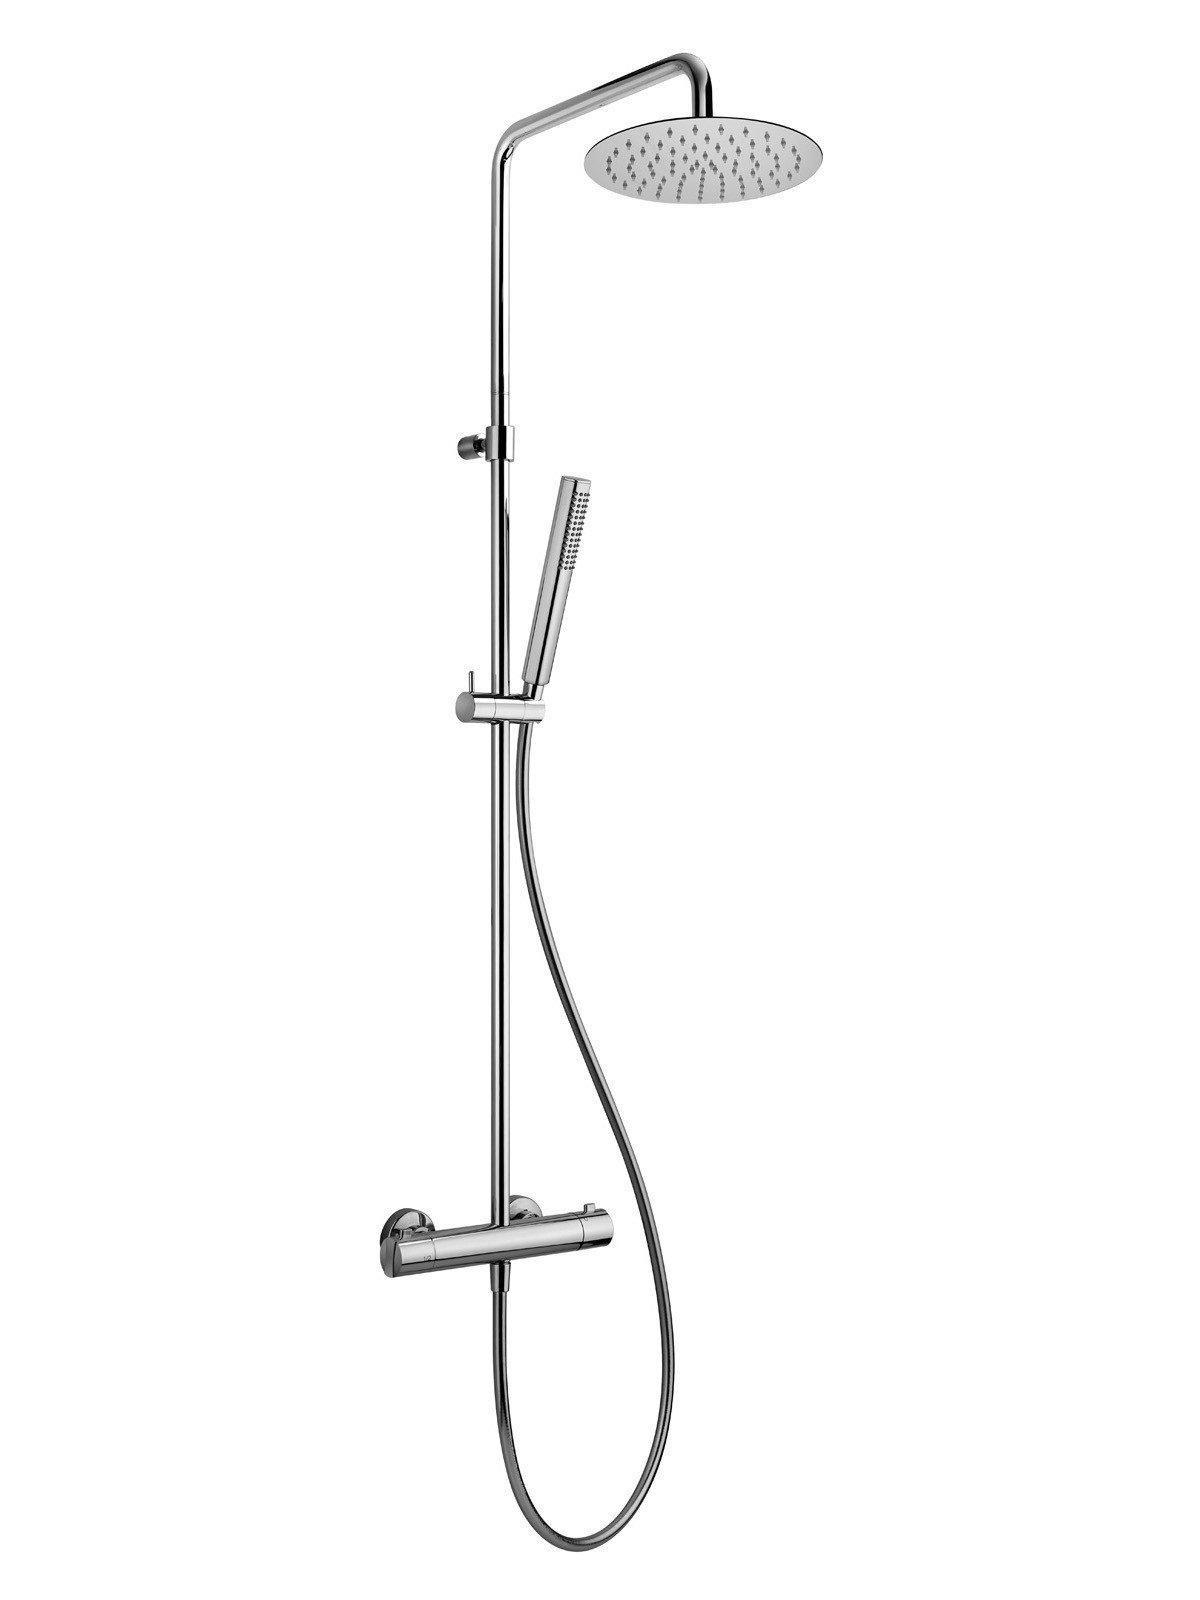 External part of shower mixer, cold water body, diverter, column